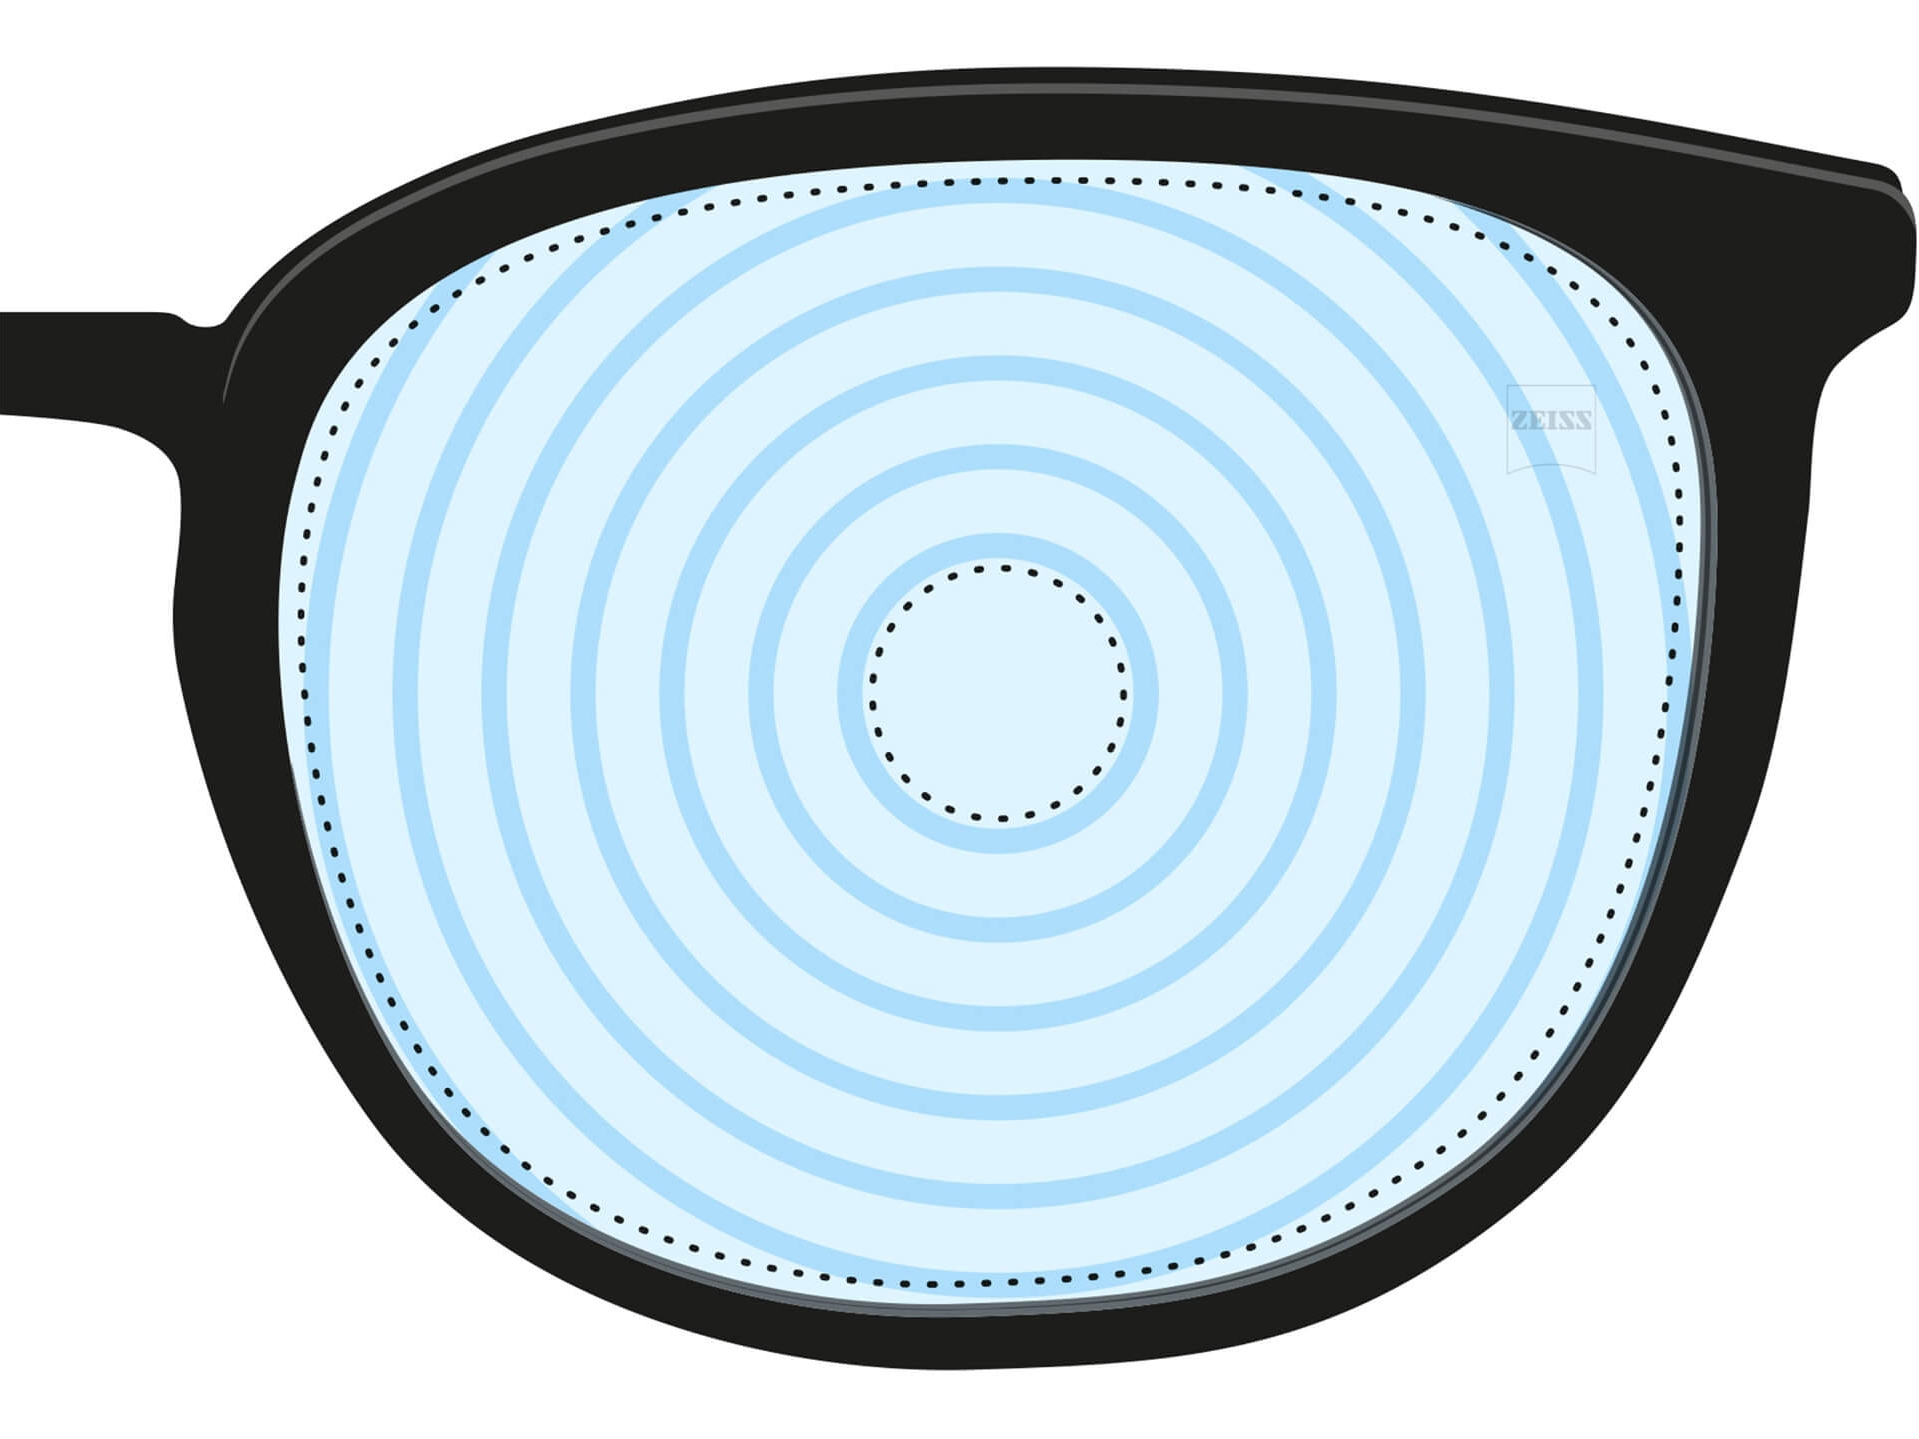 近视管理镜片的插图 此类镜片上具有代表不同视力度数的同心圆。它是特殊用途镜片类型中的一种。